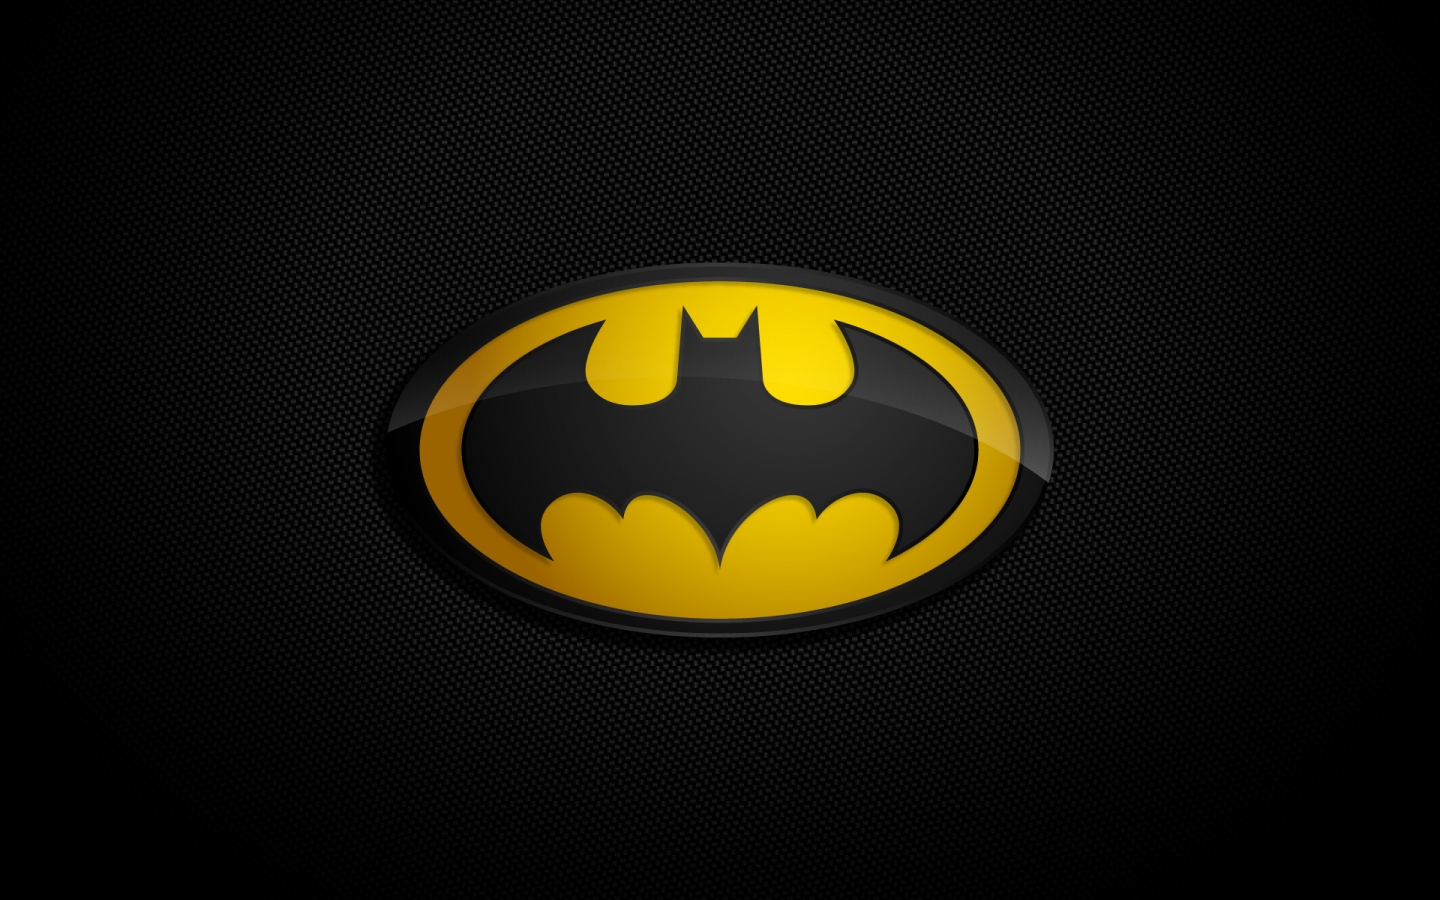 Batman Logo for 1440 x 900 widescreen resolution